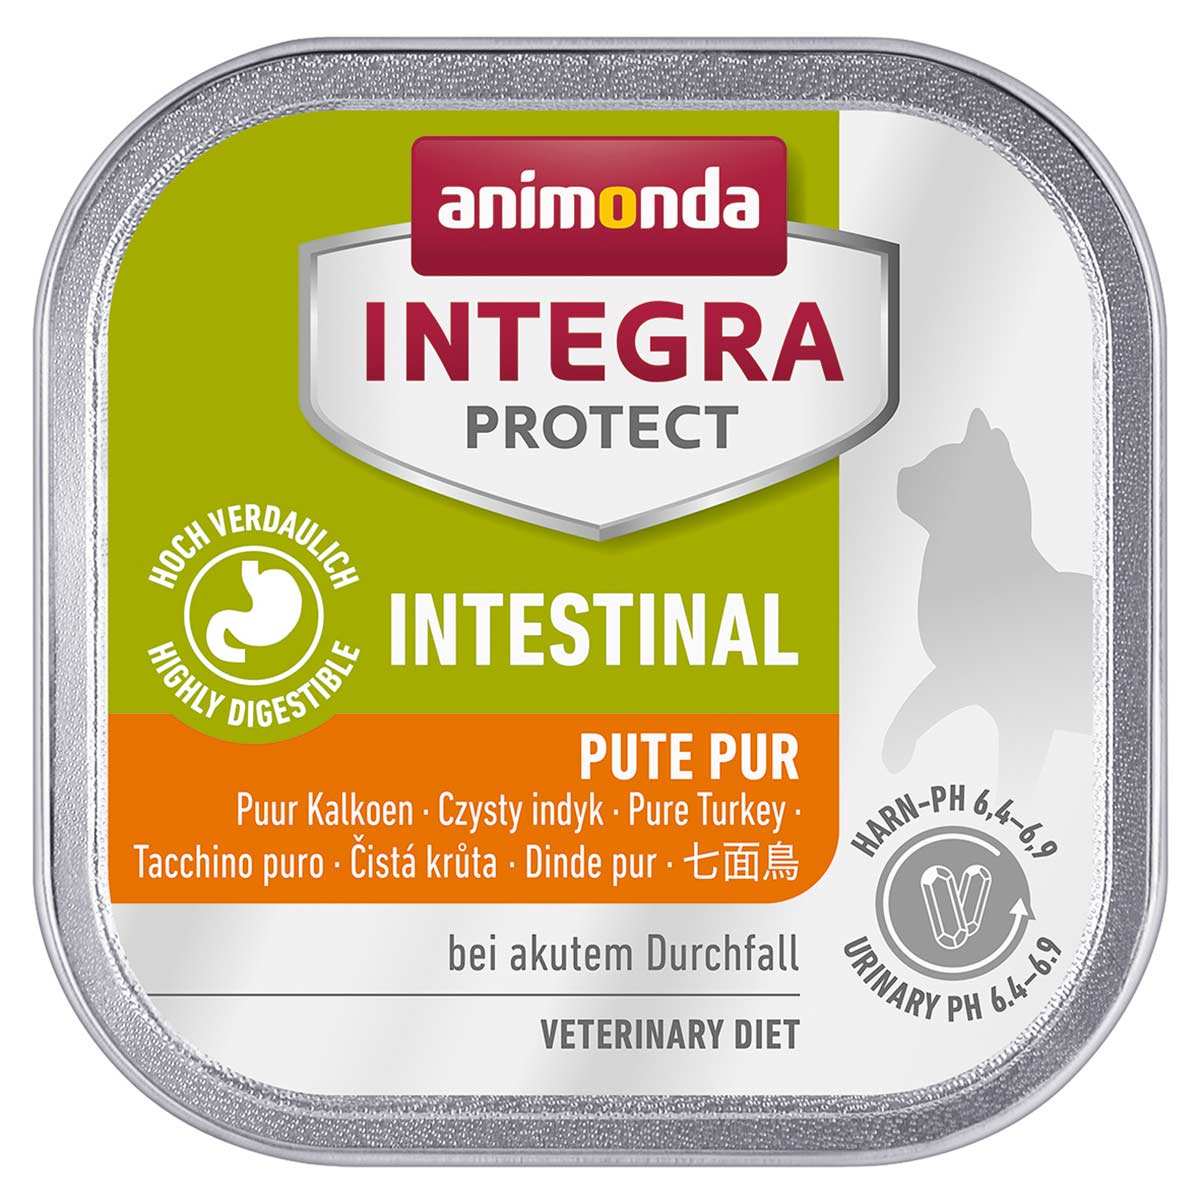 animonda INTEGRA PROTECT Intestinal Pute pur 16x100g von animonda Integra Protect